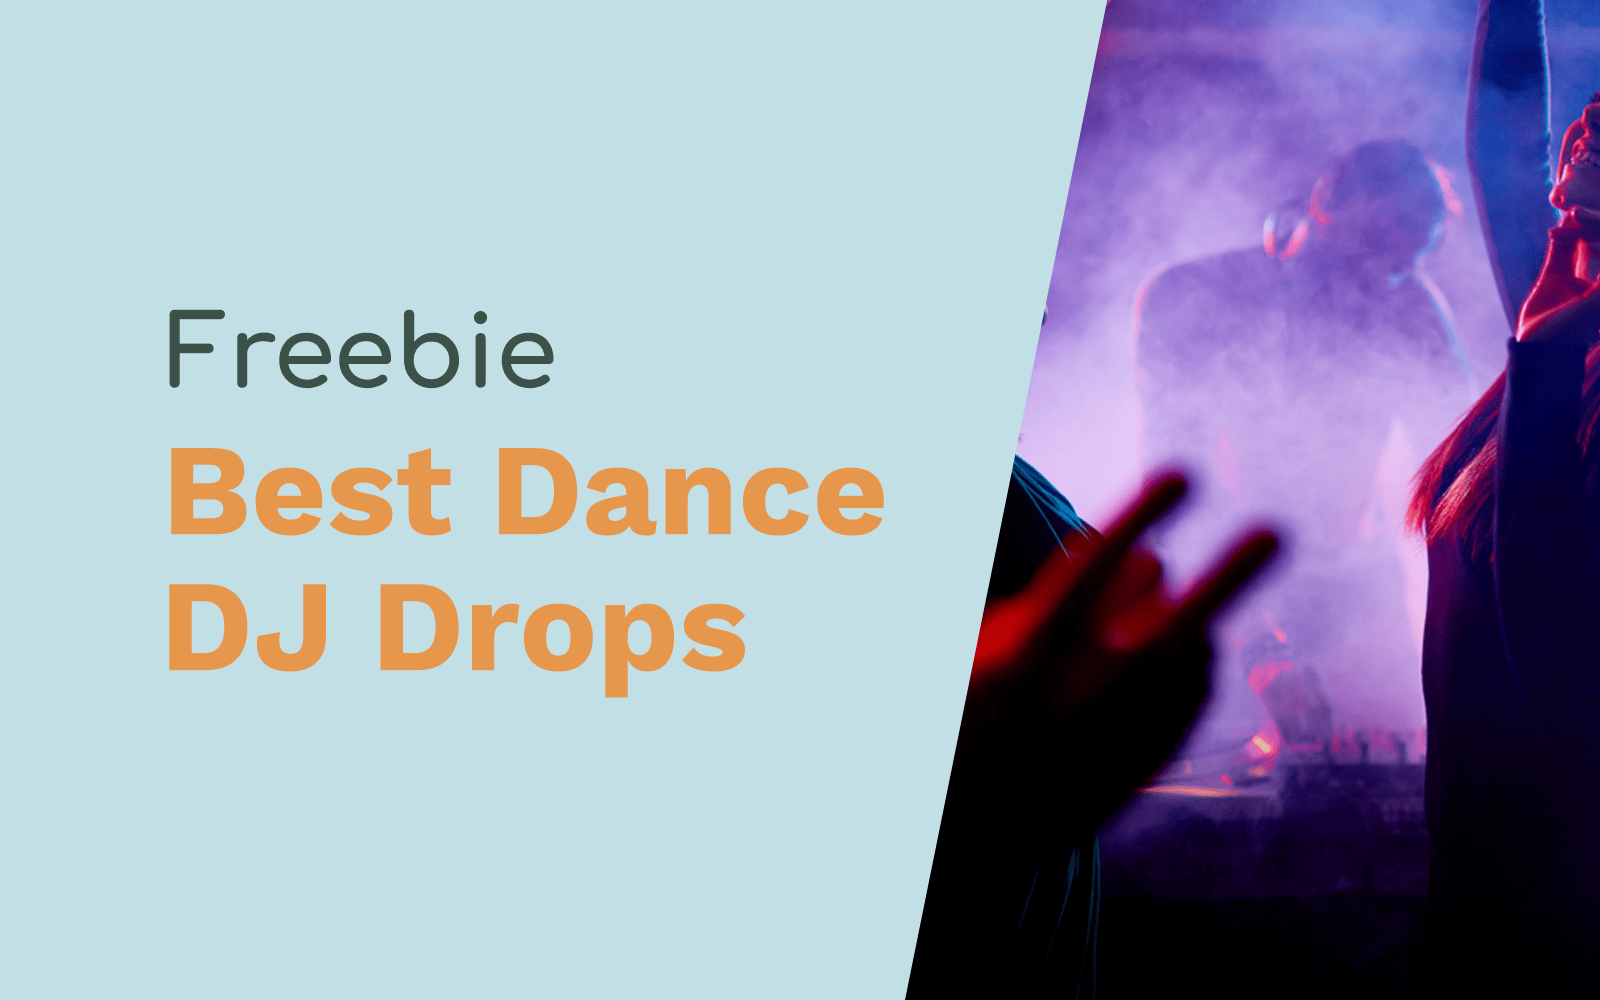 Free DJ Drops: Best Dance Music DJ Drops free dj drops Music Radio Creative